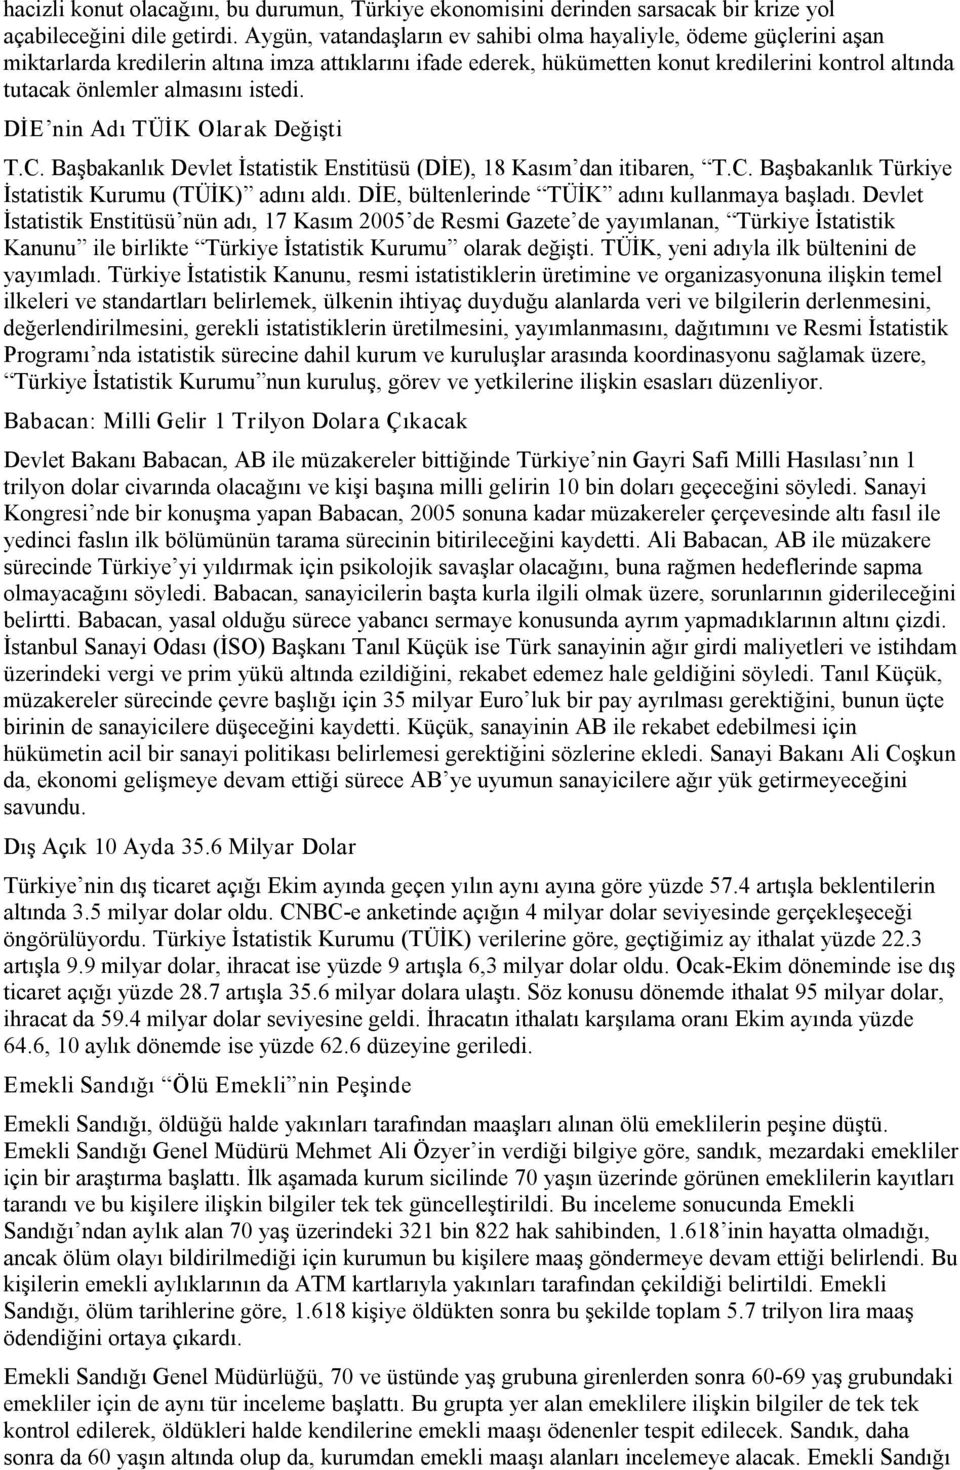 istedi. DİE nin Adı TÜİK Olarak Değişti T.C. Başbakanlık Devlet İstatistik Enstitüsü (DİE), 18 Kasım dan itibaren, T.C. Başbakanlık Türkiye İstatistik Kurumu (TÜİK) adını aldı.